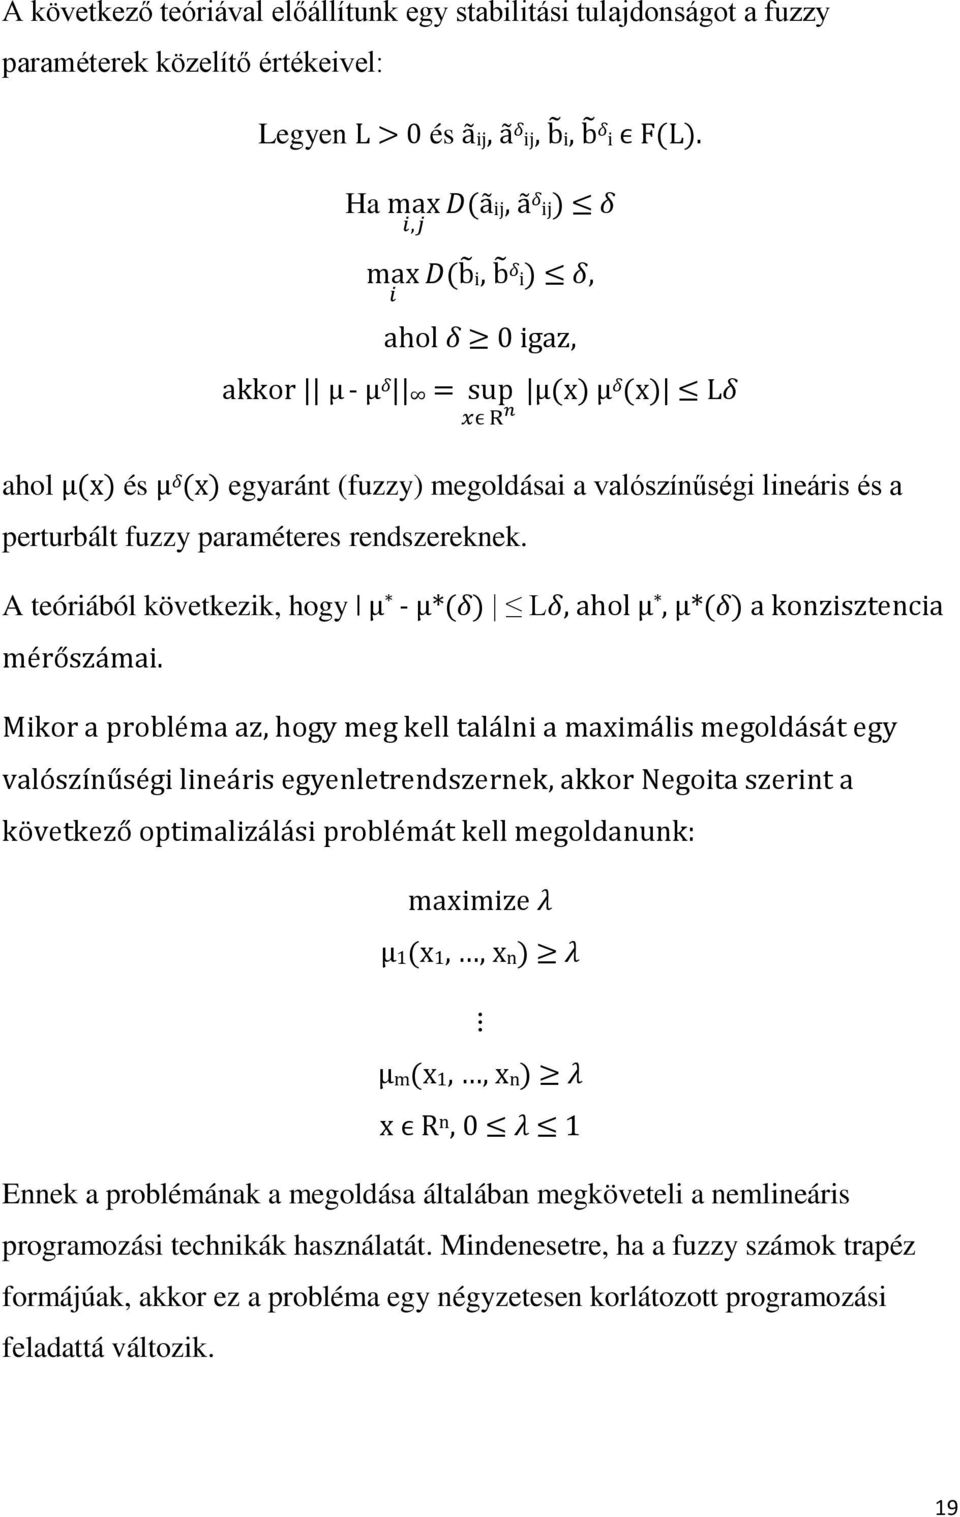 fuzzy paraméteres rendszereknek. A teóriából következik, hogy μ * - μ*(δ) Lδ, ahol μ *, μ*(δ) a konzisztencia mérőszámai.